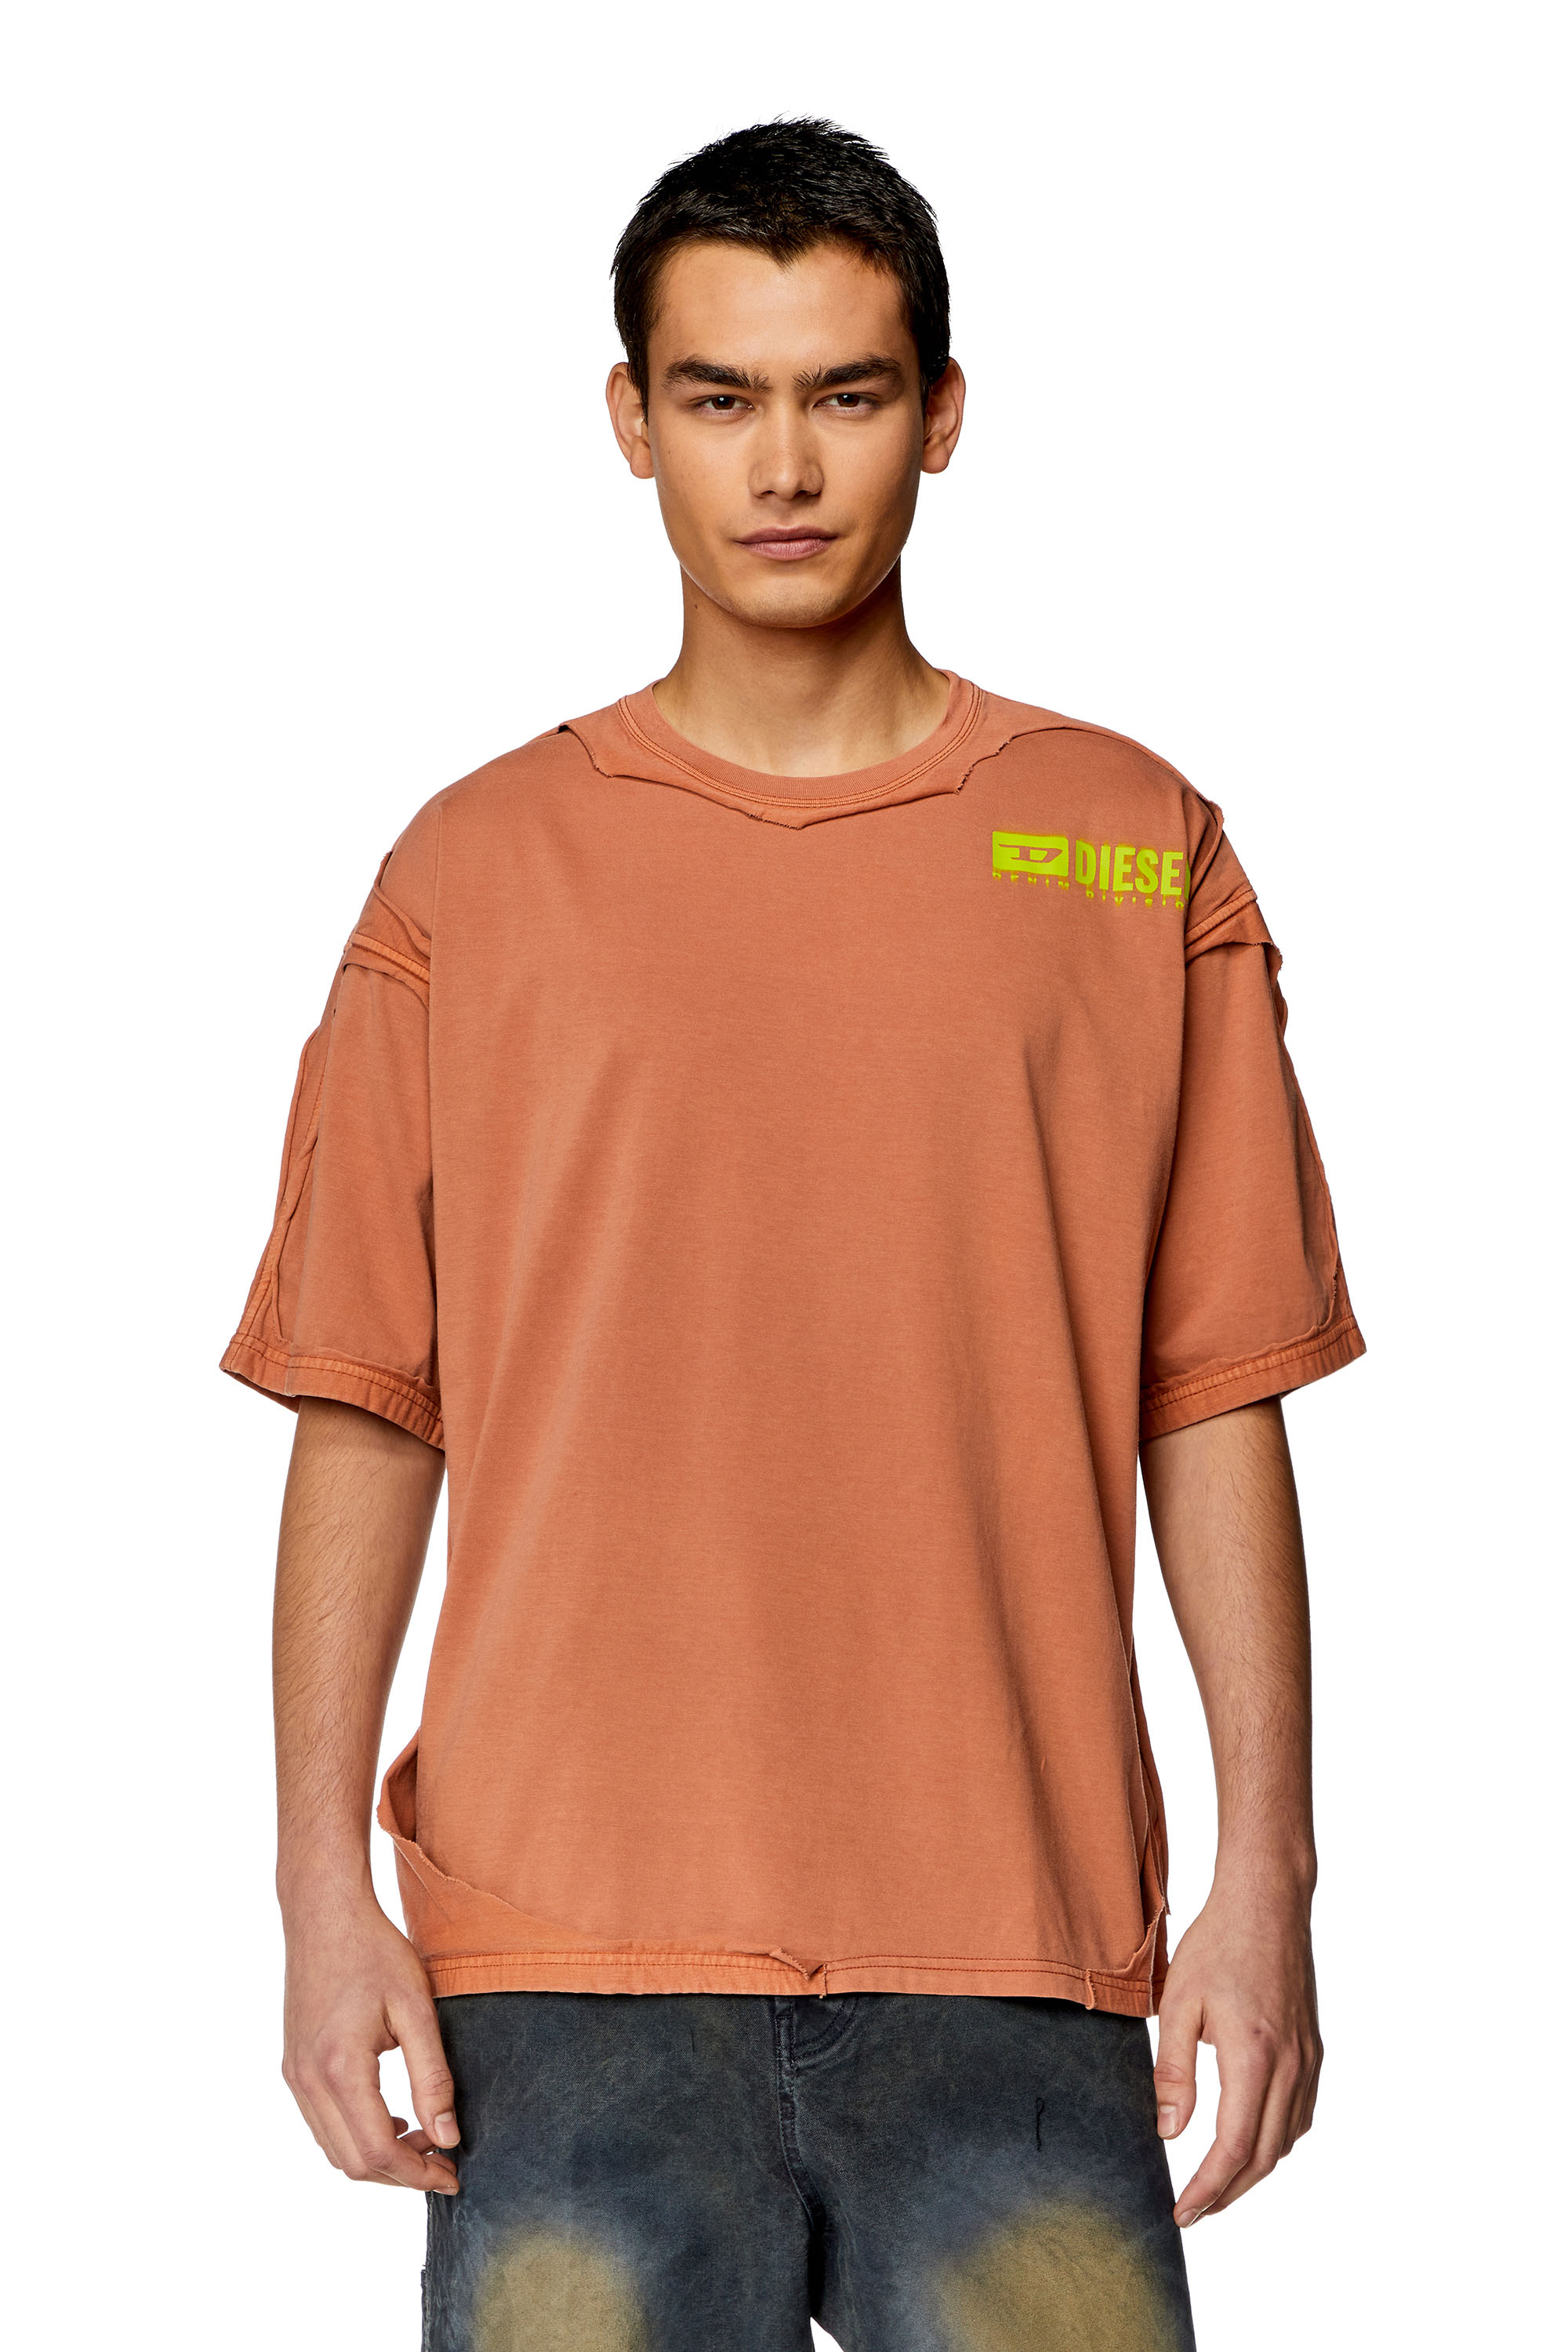 Diesel - Camiseta con efecto roto despegado - Camisetas - Hombre - Naranja